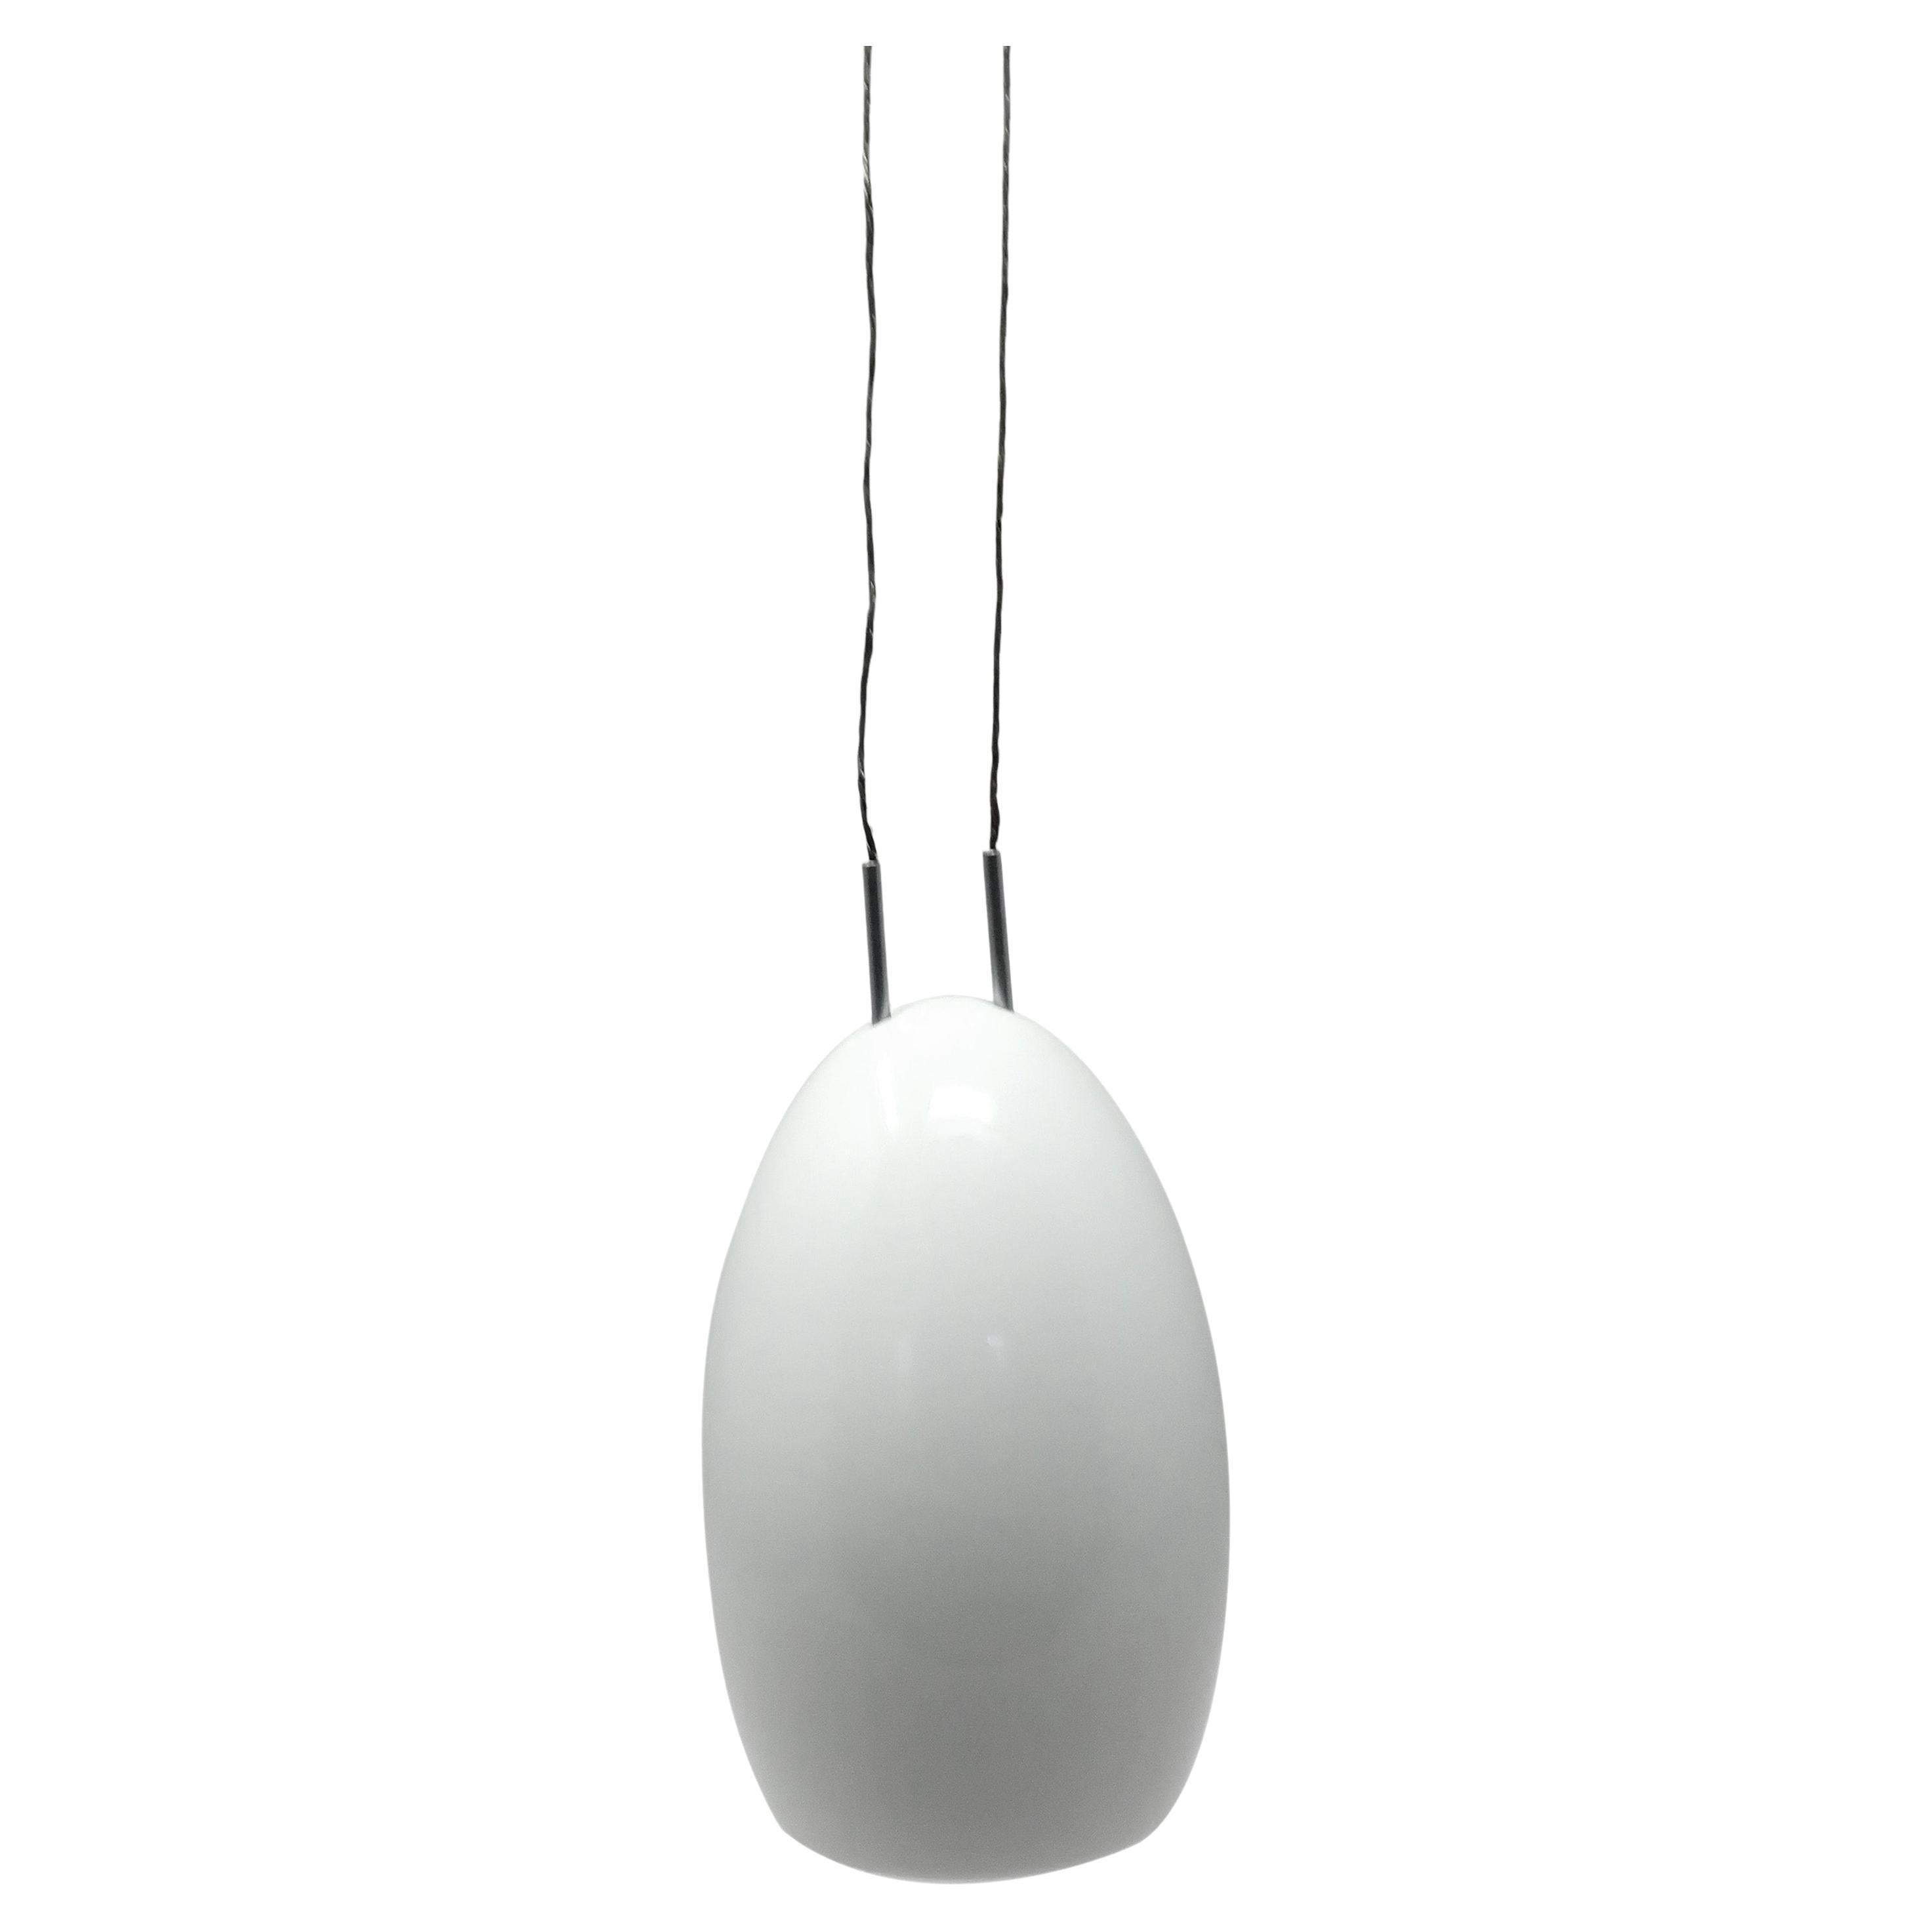 White Porcelain "Oh" Pendant Lamp by Tobias Grau